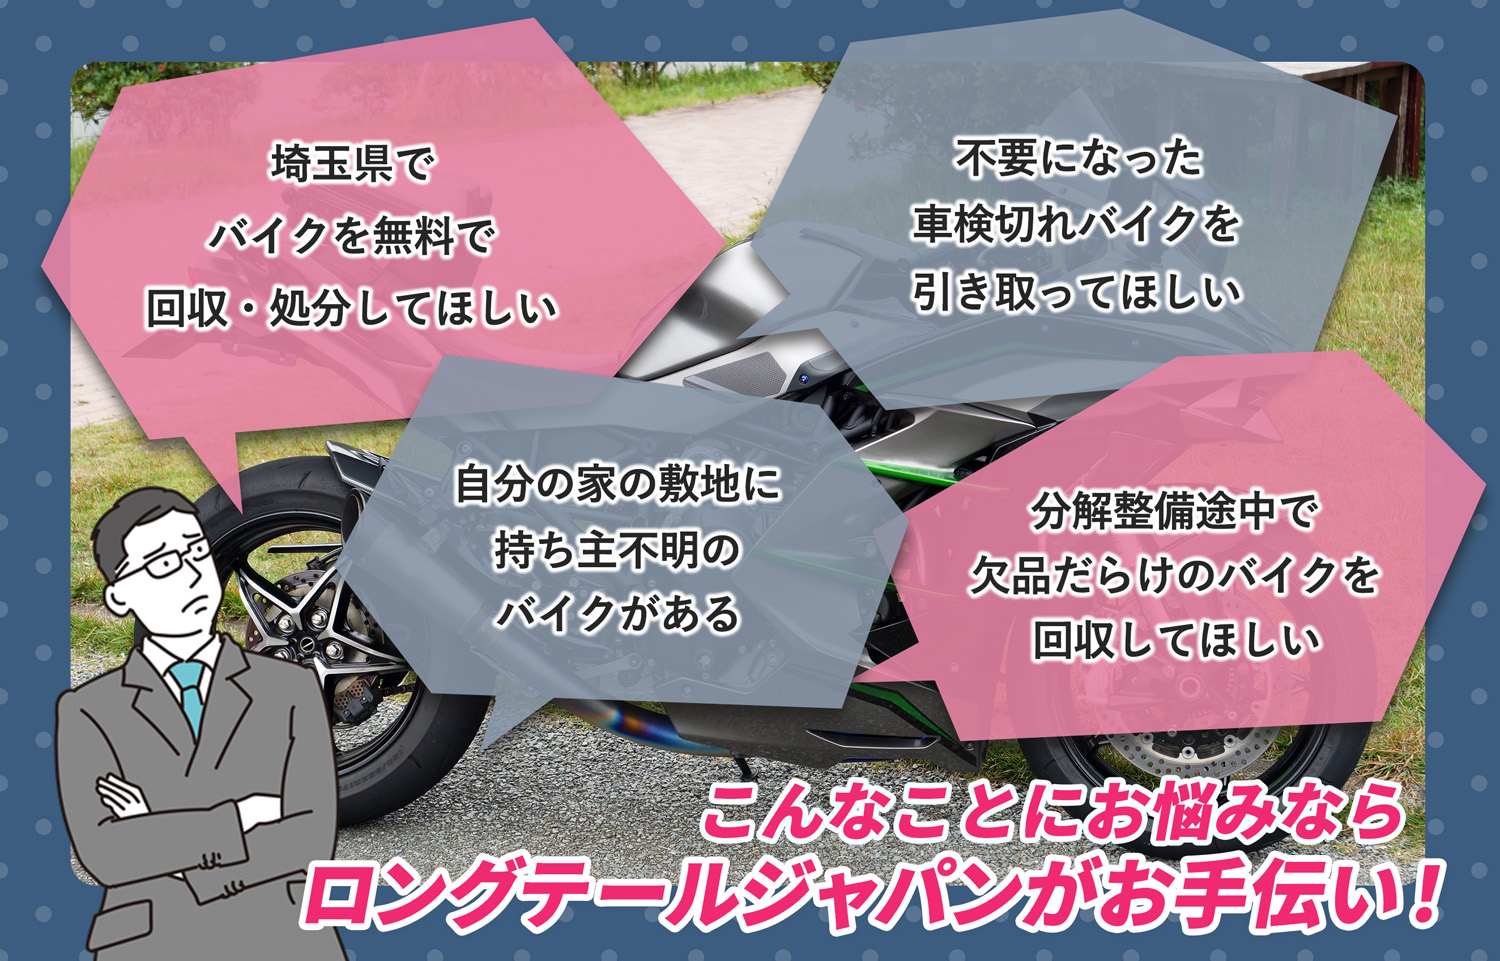 埼玉県でこんなバイクの処分にお困りでしたらバイク無料回収処分隊がお手伝いいたします。